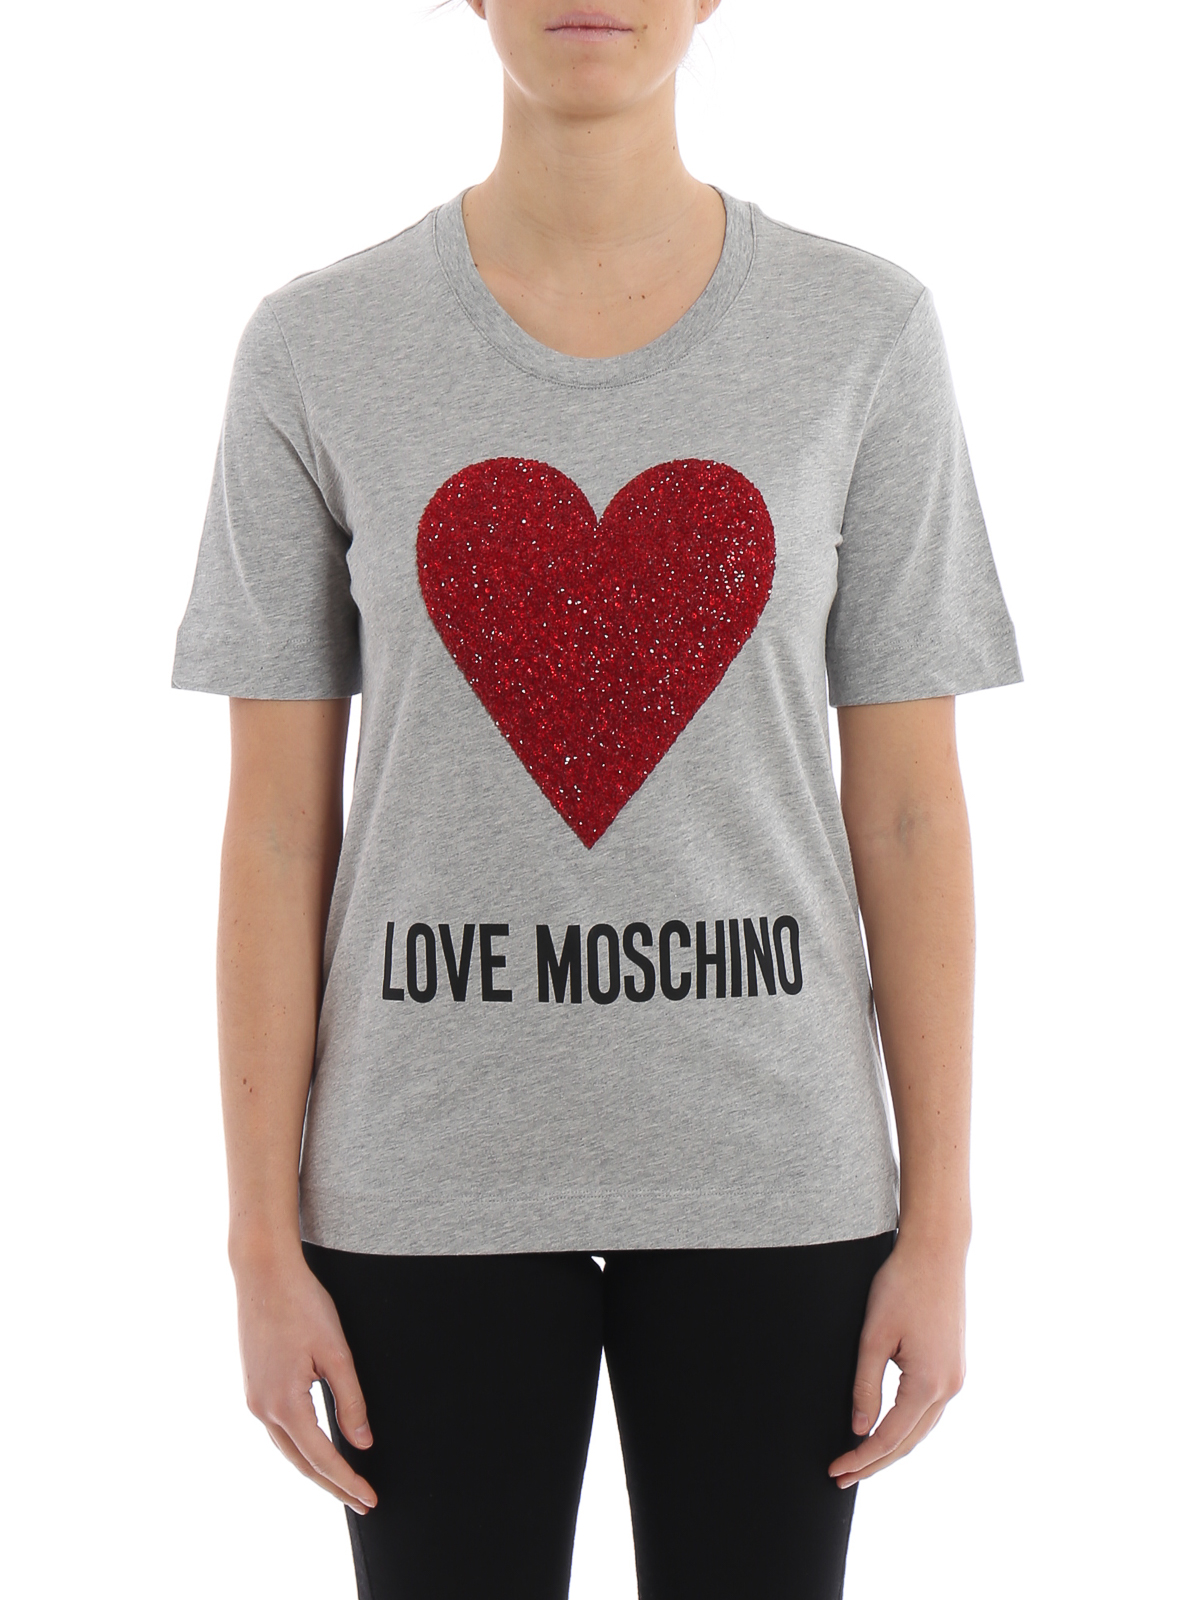 Expected love. Love Moschino футболка с сердцем. Футболка Лове Москино. Футболка Double open Heart. Москино красные футболки.